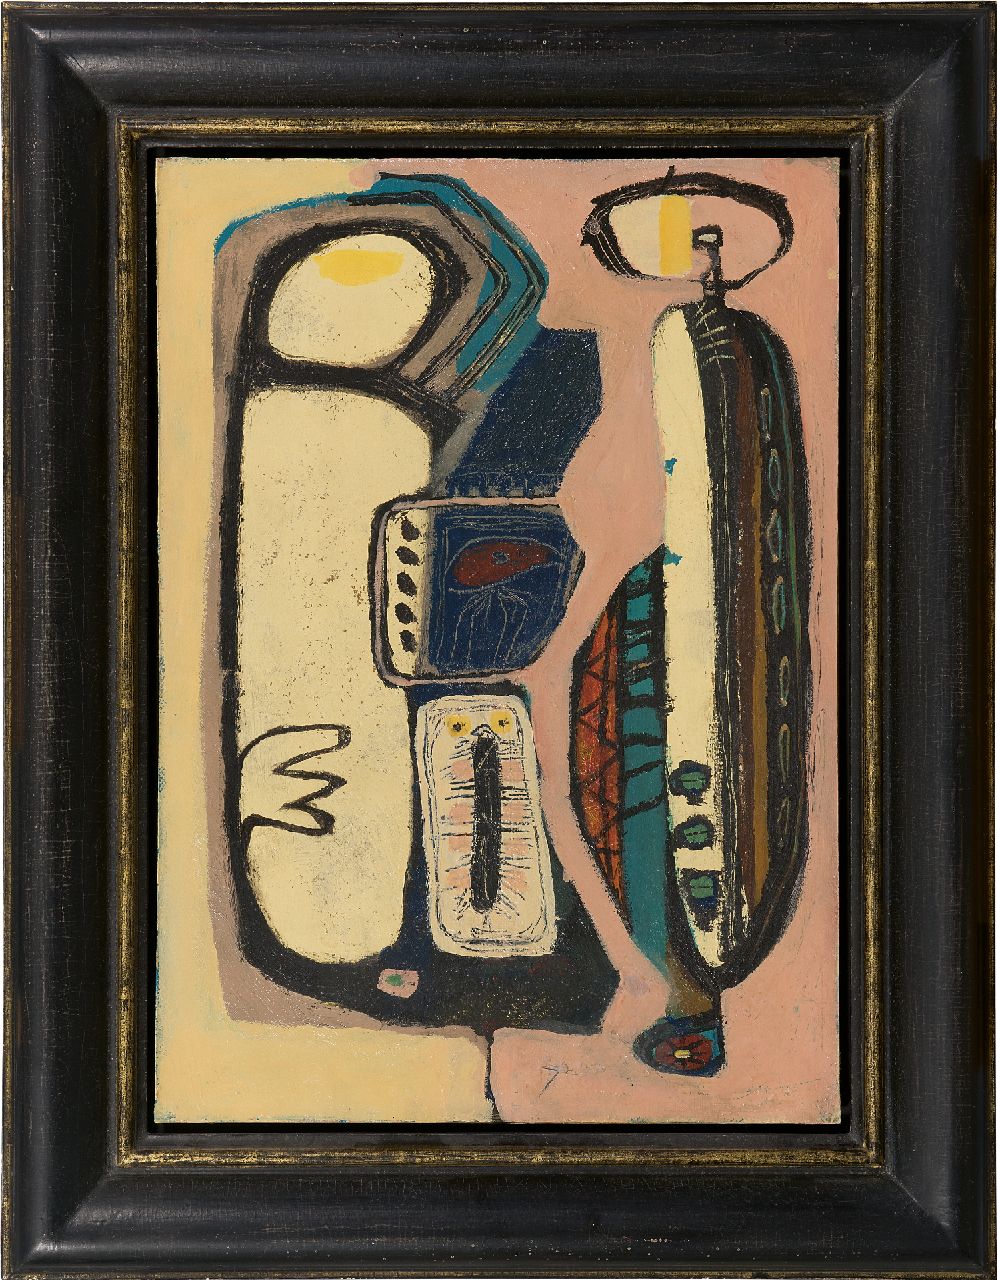 Rooskens J.A.  | Joseph Antoon 'Anton' Rooskens | Schilderijen te koop aangeboden | Compositie, olieverf op board 49,6 x 35,2 cm, te dateren midden jaren 50